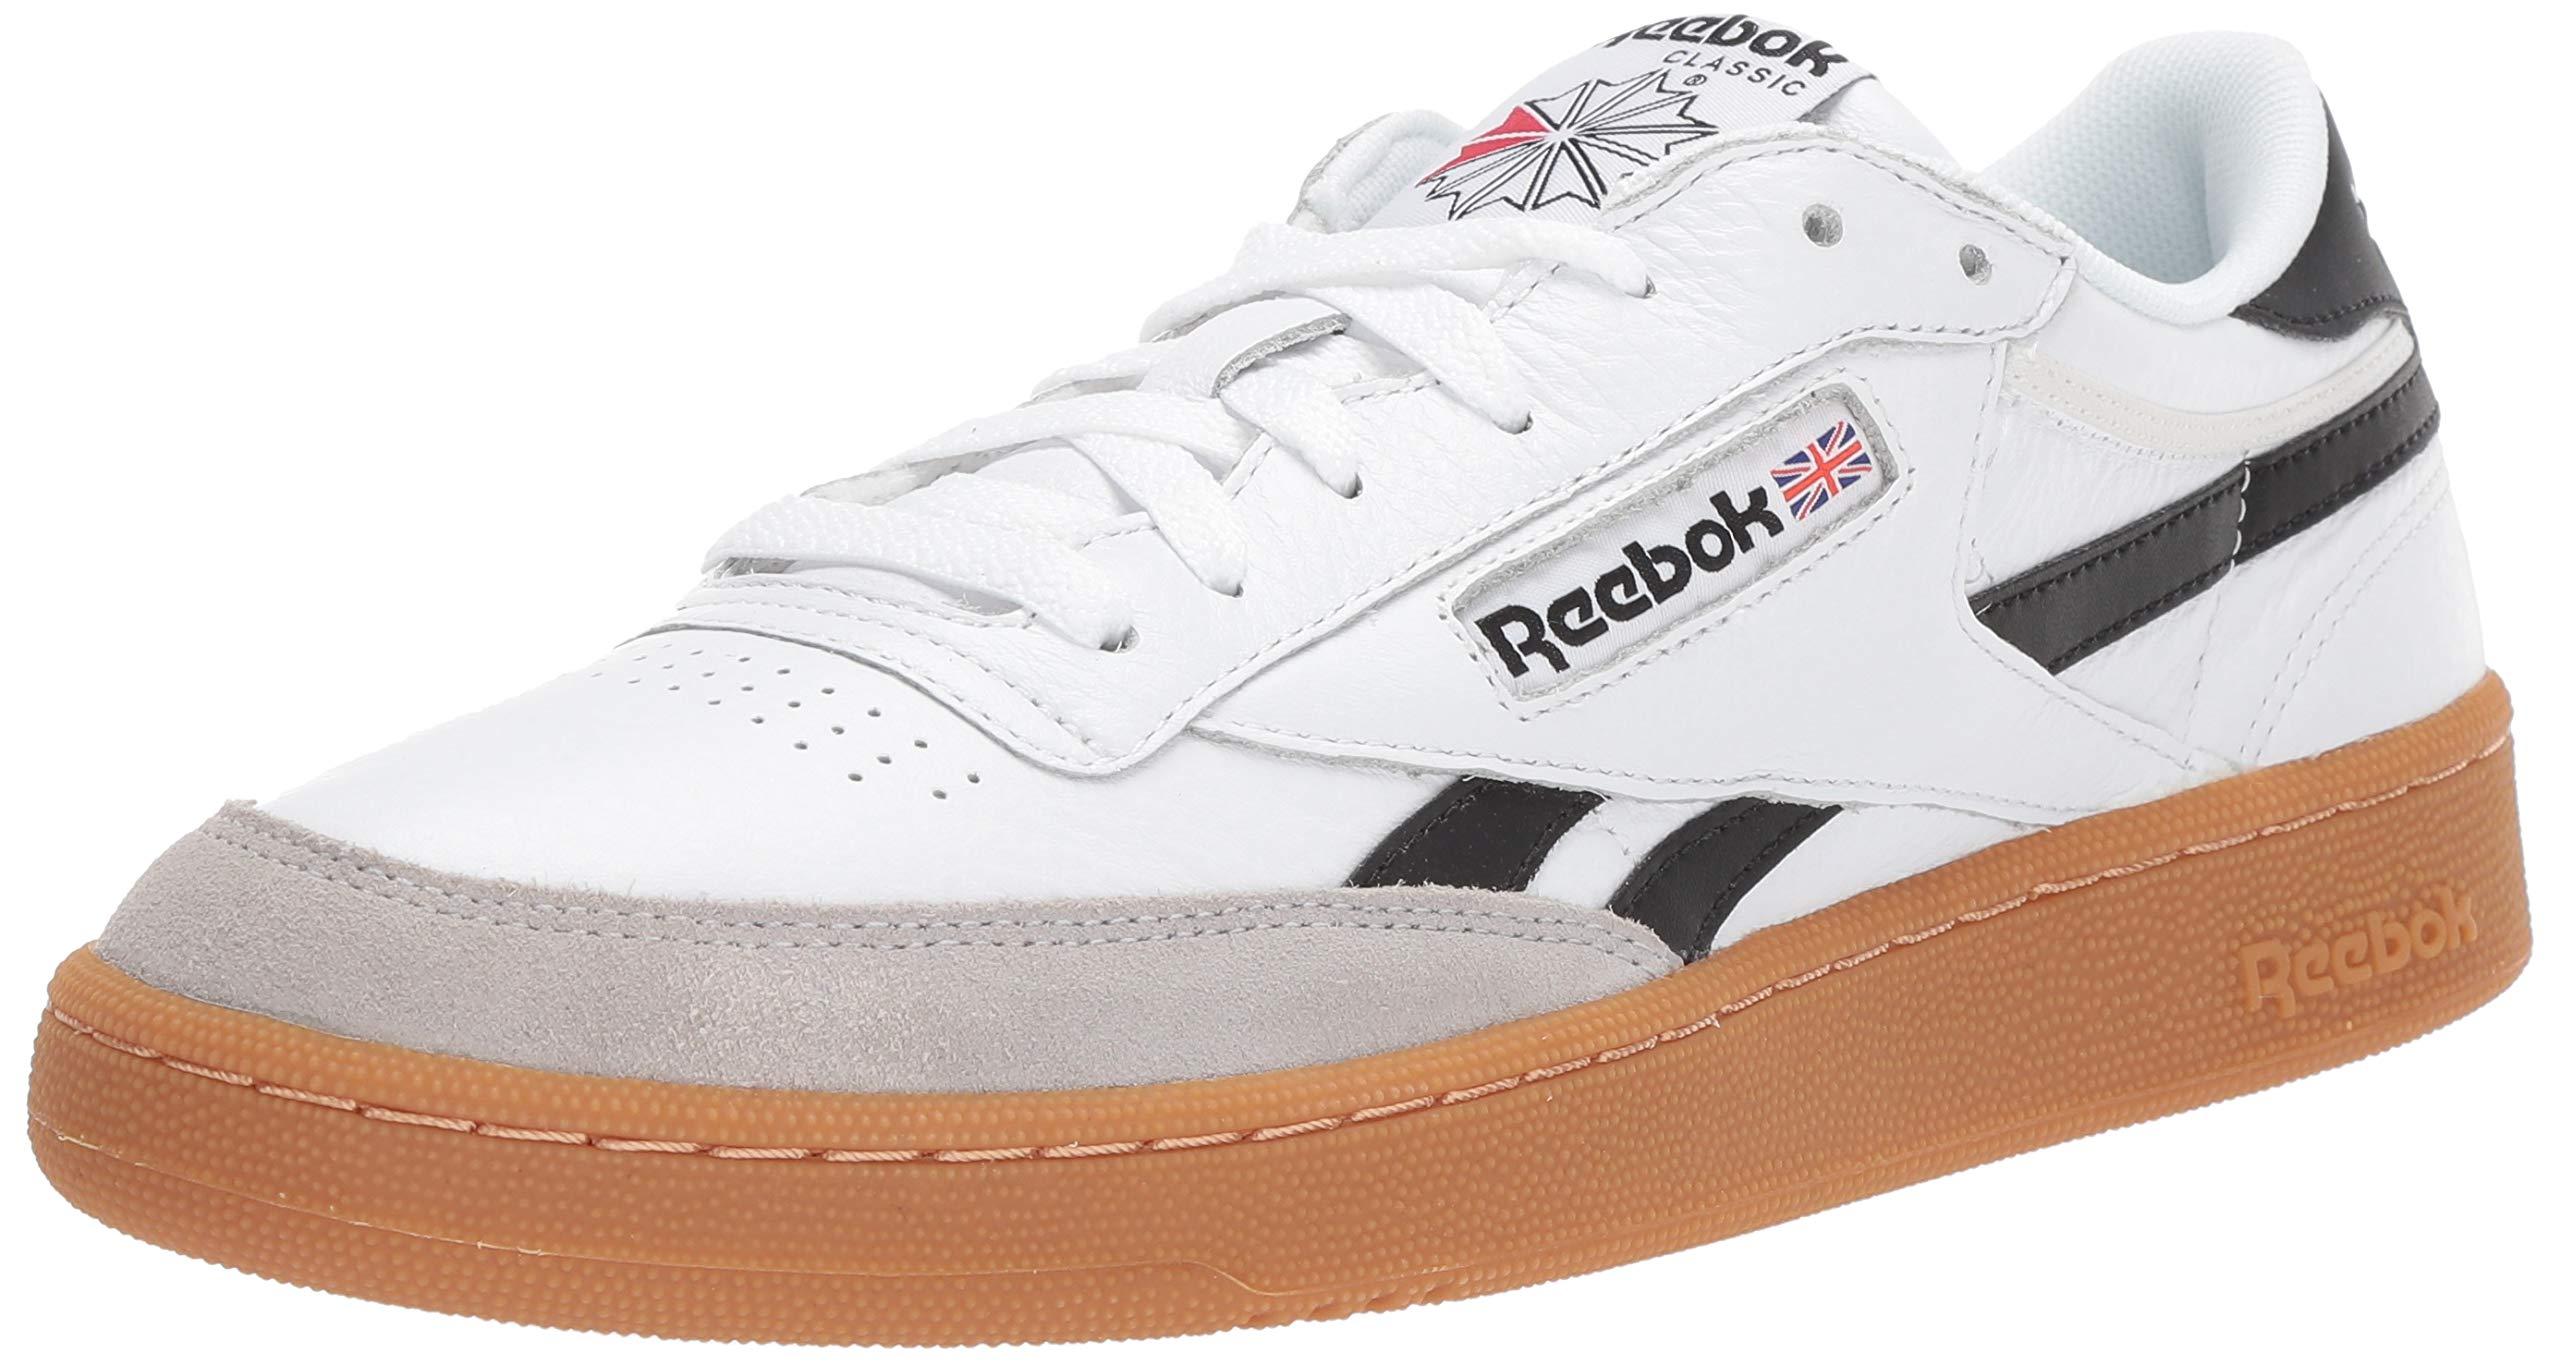 Reebok Leather Revenge Plus Sneaker in White for Men - Lyst